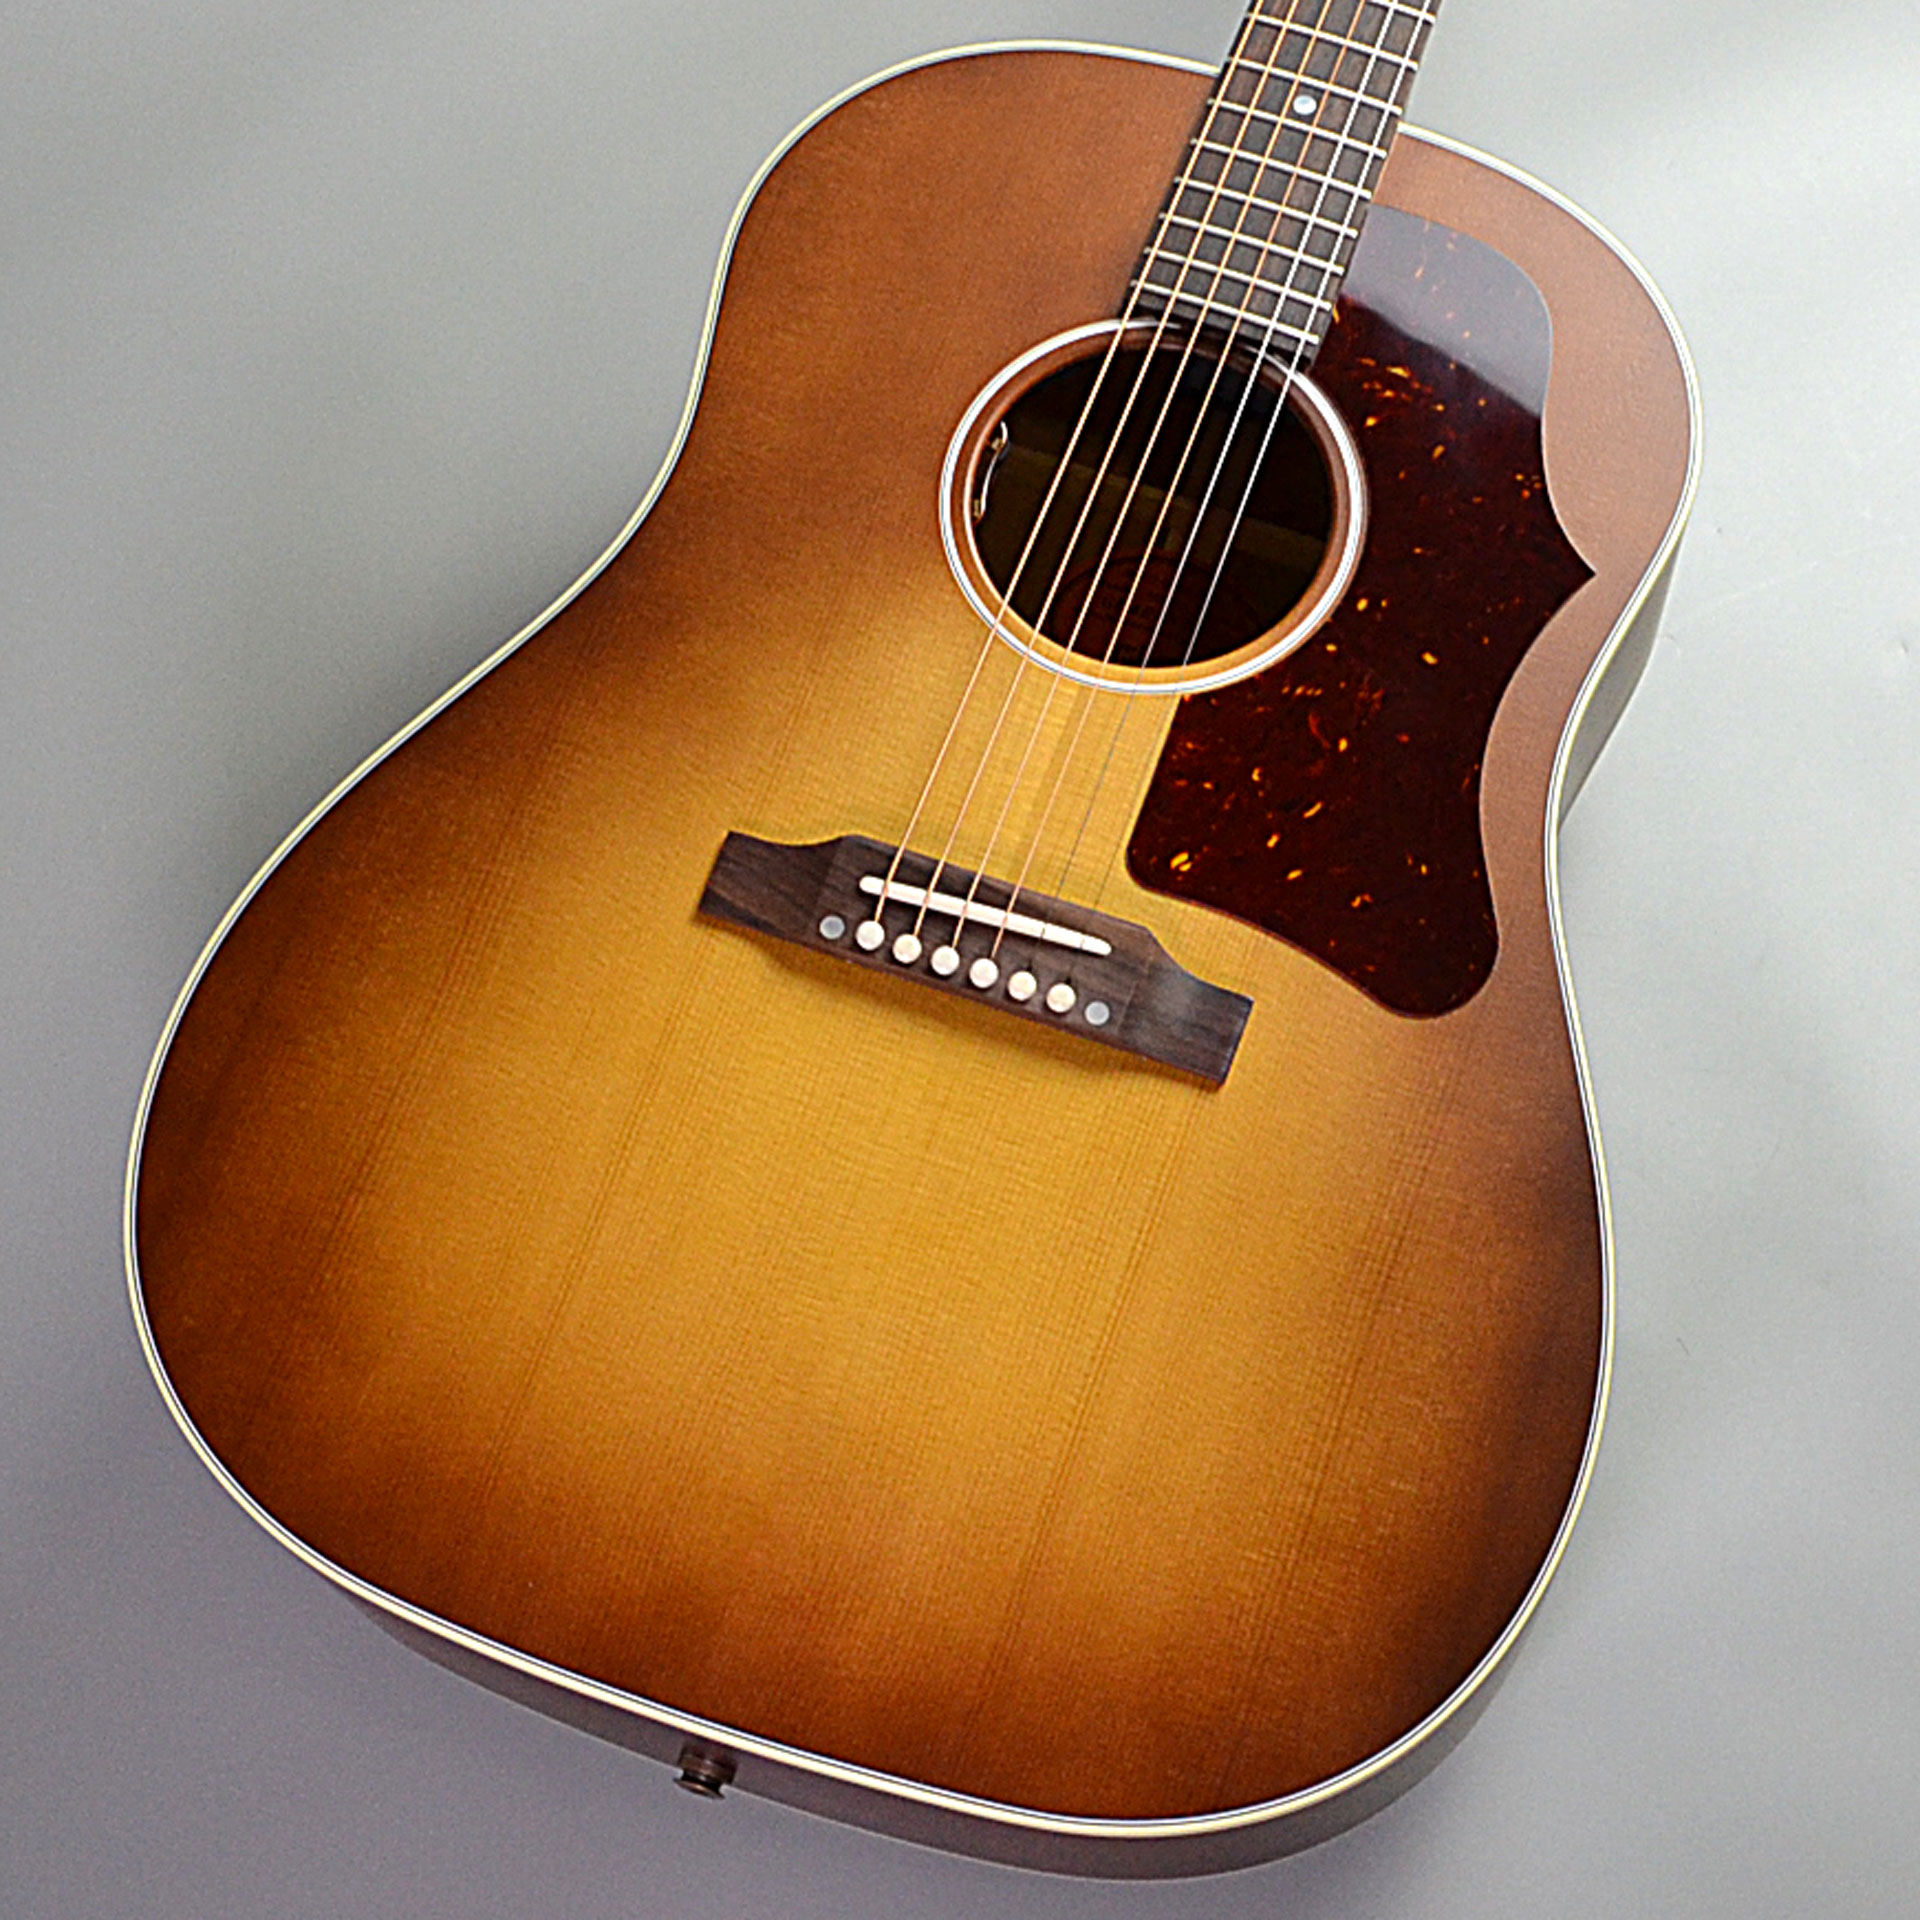 CONTENTSGibson 「J-45」とは？J-45 50s Faded モデル島村楽器長野店で展示しております！この商品へのお問い合わせはアコギ担当中村まで！Gibson 「J-45」とは？ 世界を牽引するギターメーカー「Gibson」。エレキギターのレスポールモデルを始め、様々なモデルでギタ […]